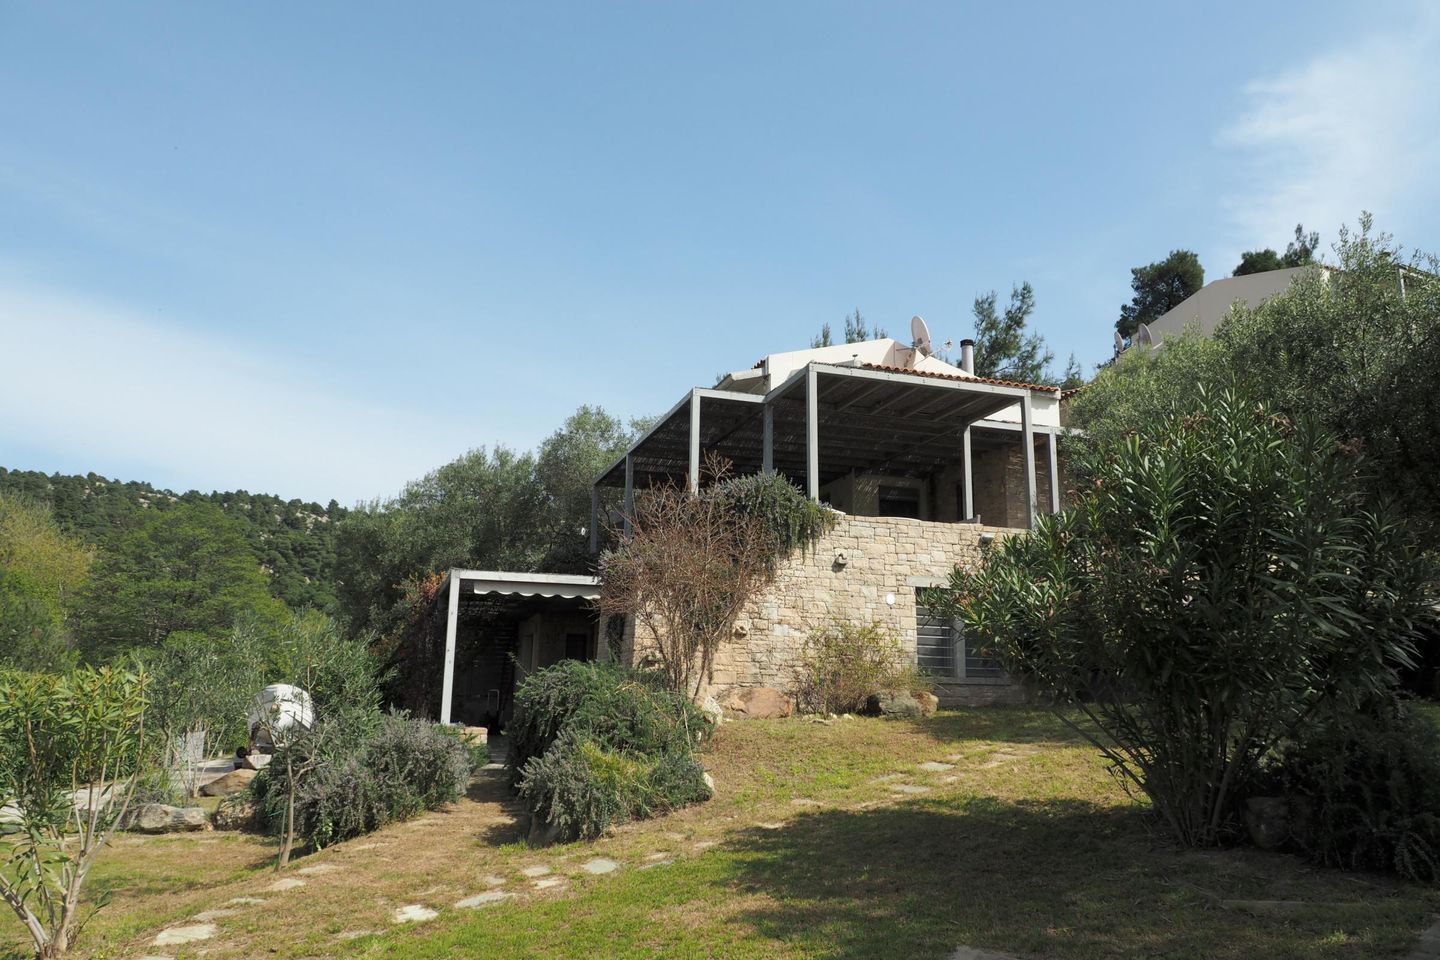 Modernes Ferienhaus in toller Lage direkt am Meer,  in Griechenland